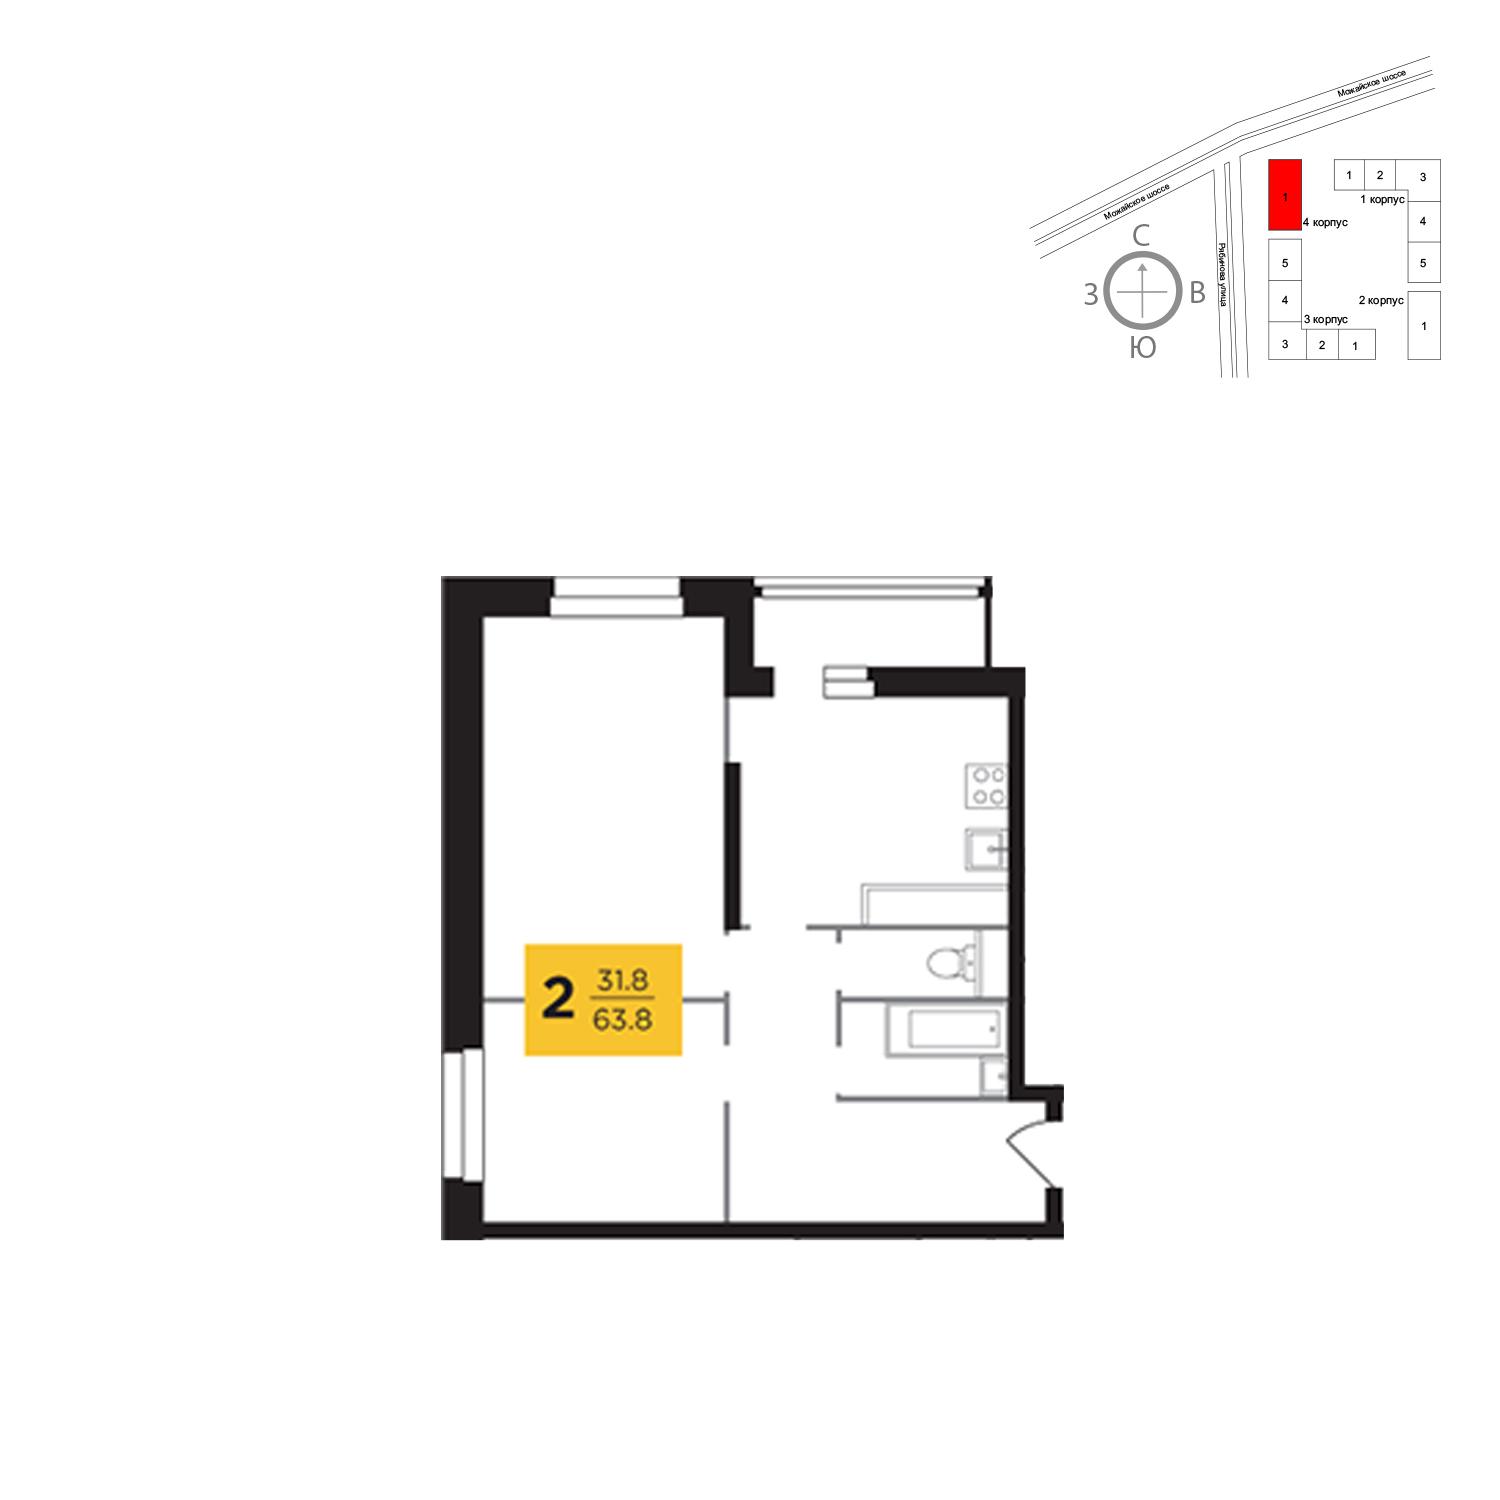 Продаётся 2-комнатная квартира в новостройке 63.8 кв.м. этаж 19/23 за 13 215 459 руб 